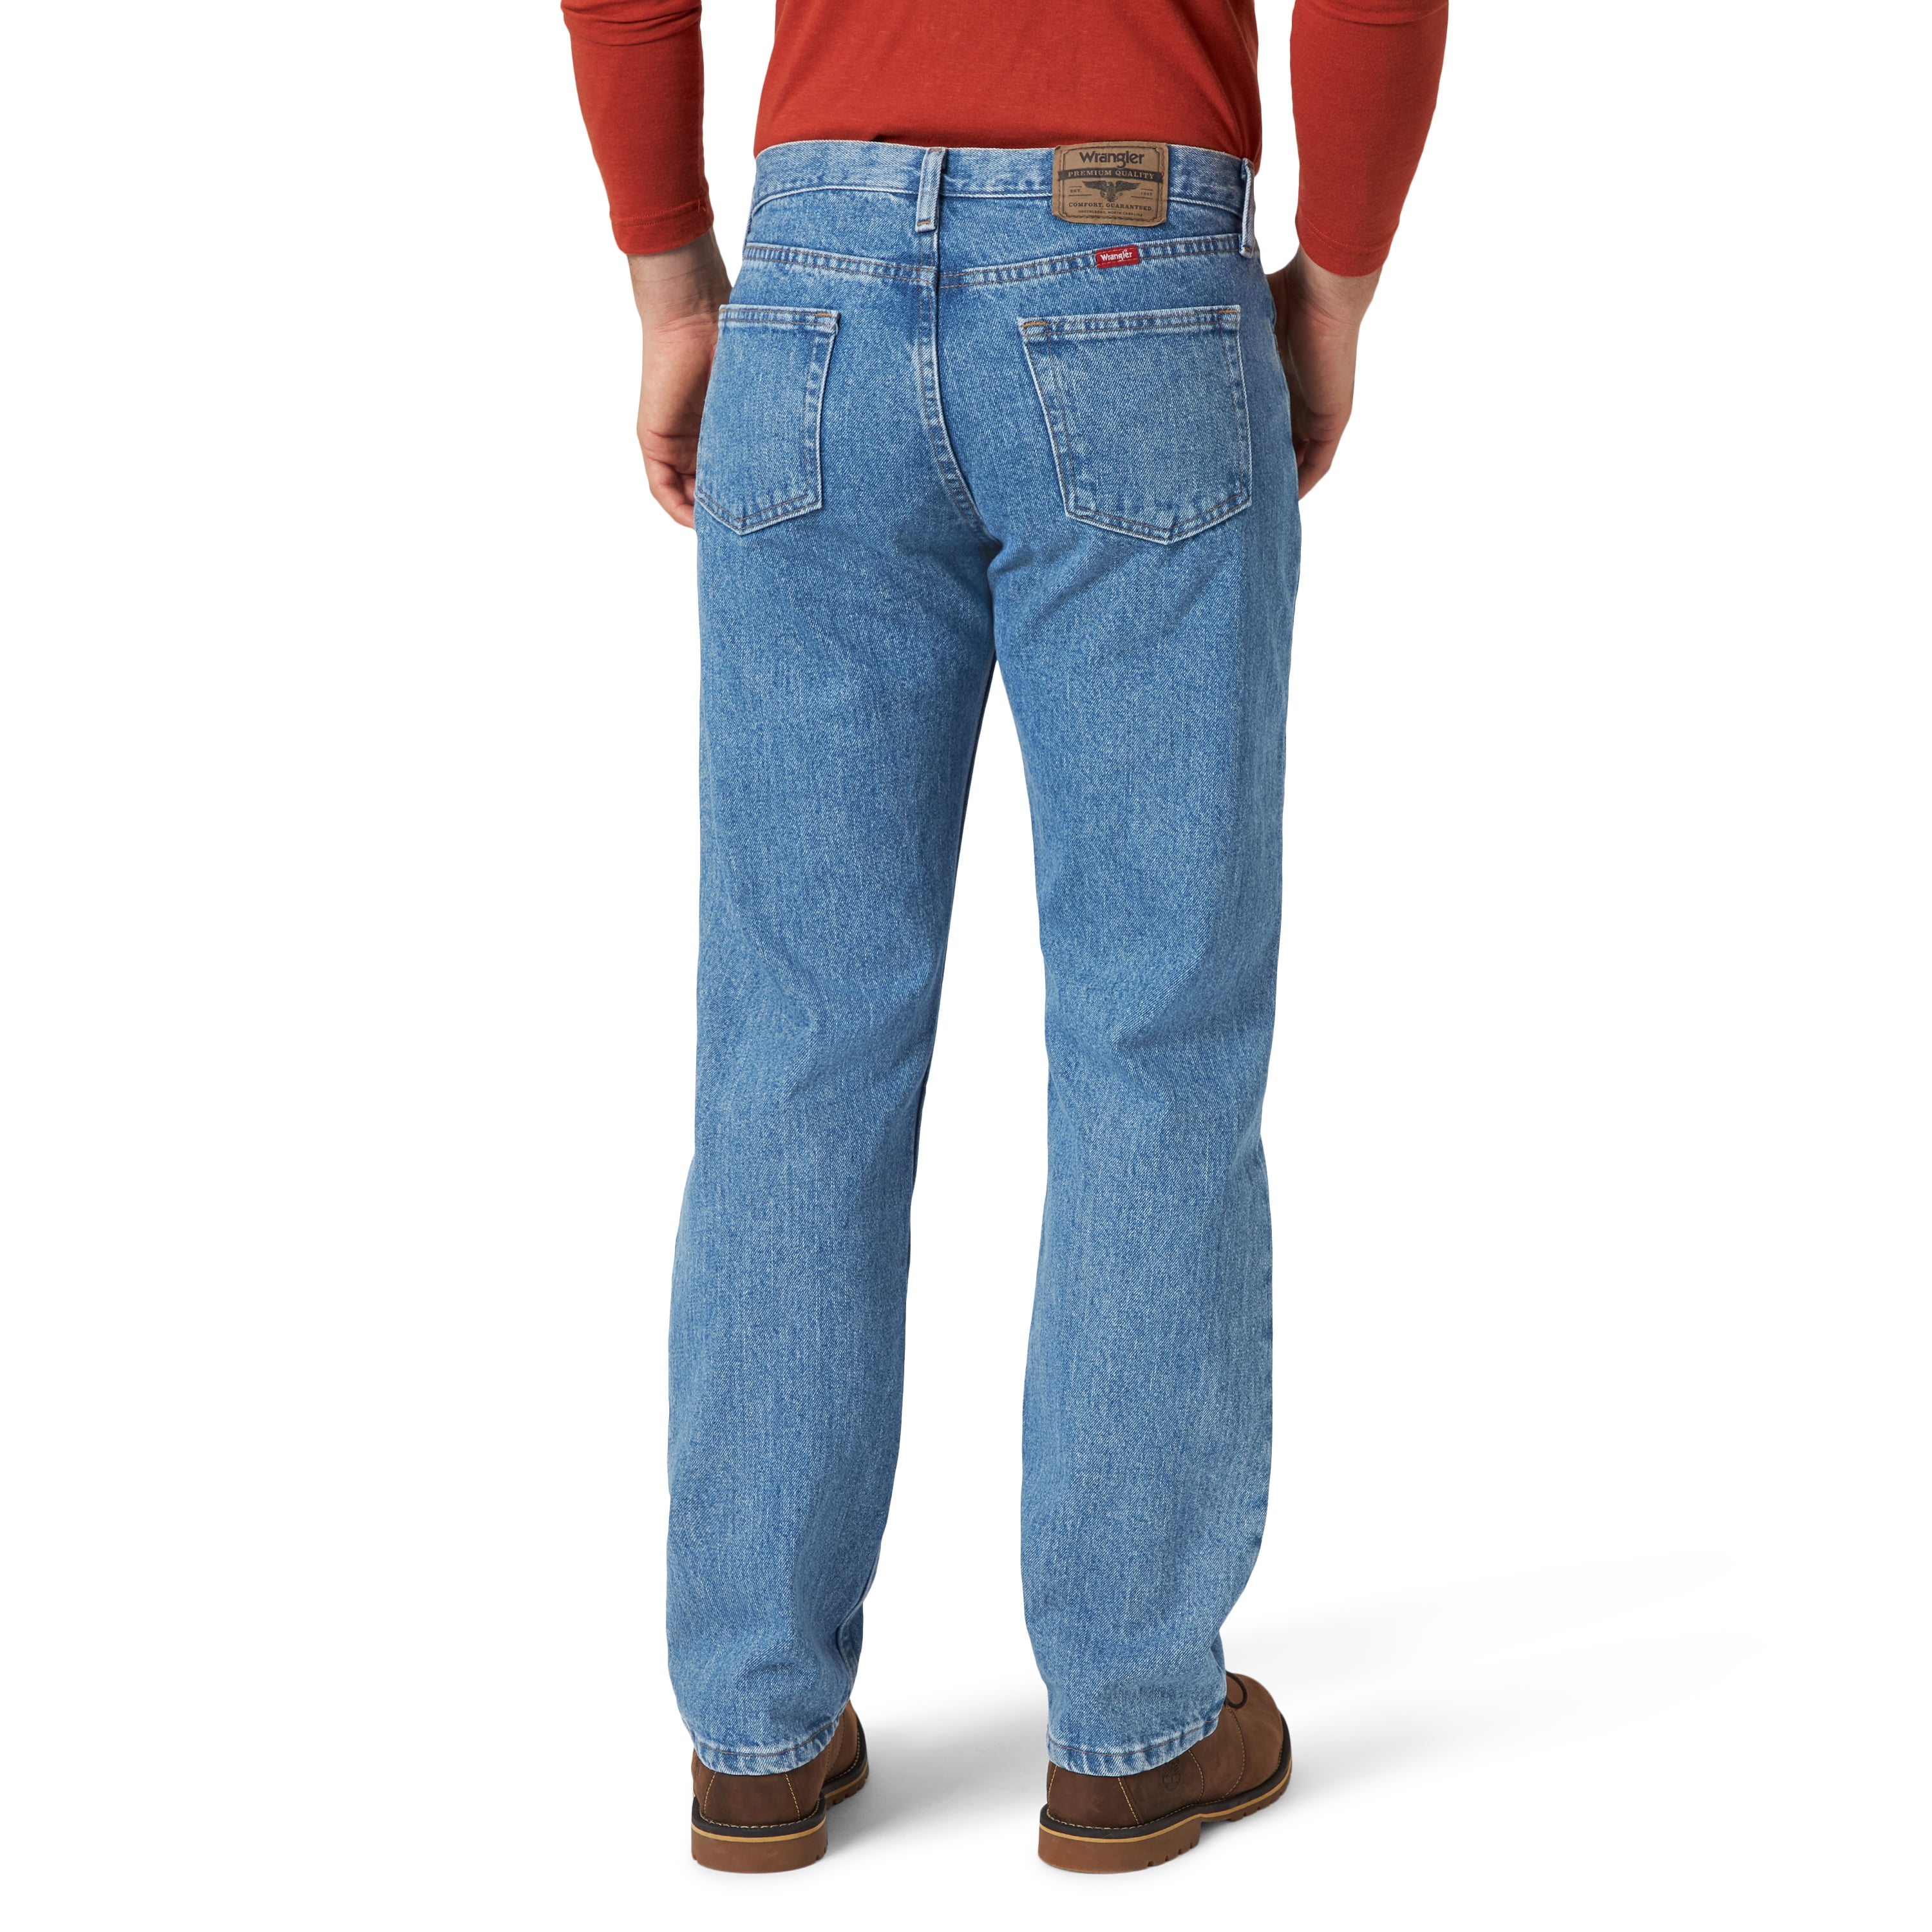 Wrangler Men's Jeans From $12 on Walmart.com (Regularly $19)